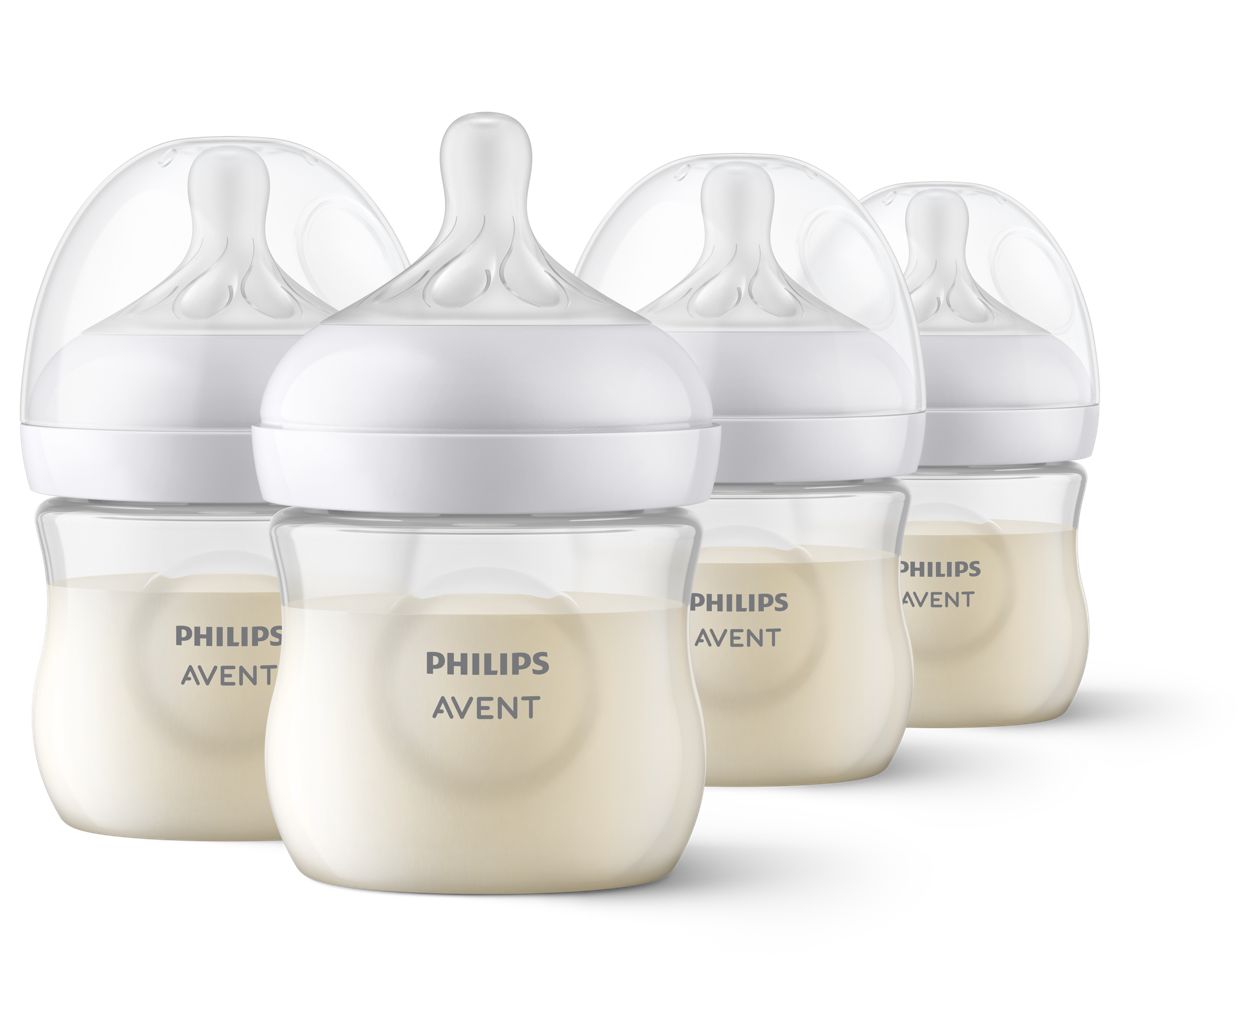 Phillips Avent - Bottle & Nipple Brush